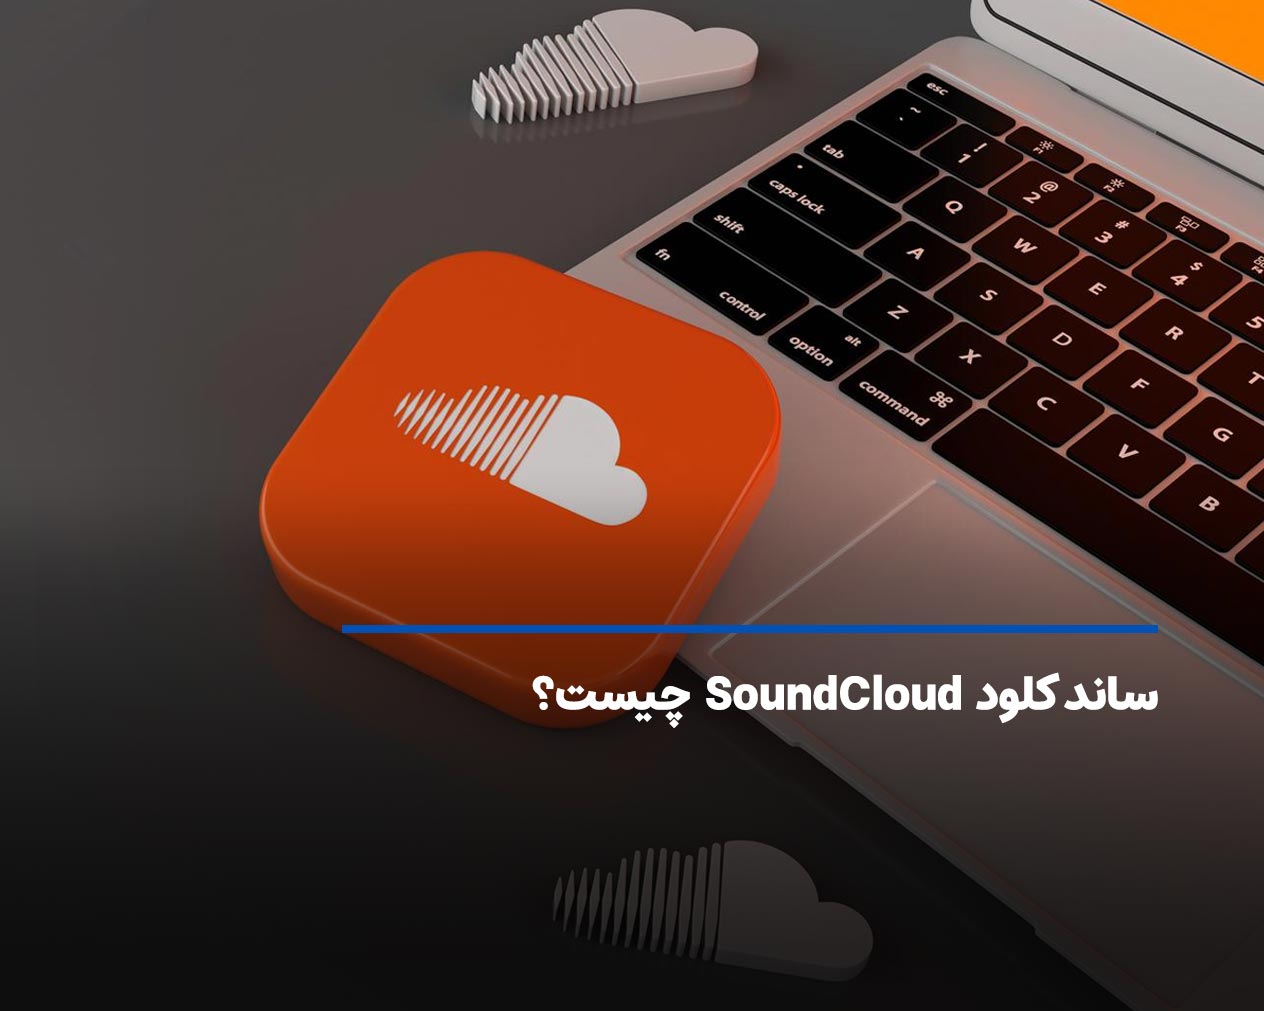 ساند کلود (SoundCloud) چیست؟